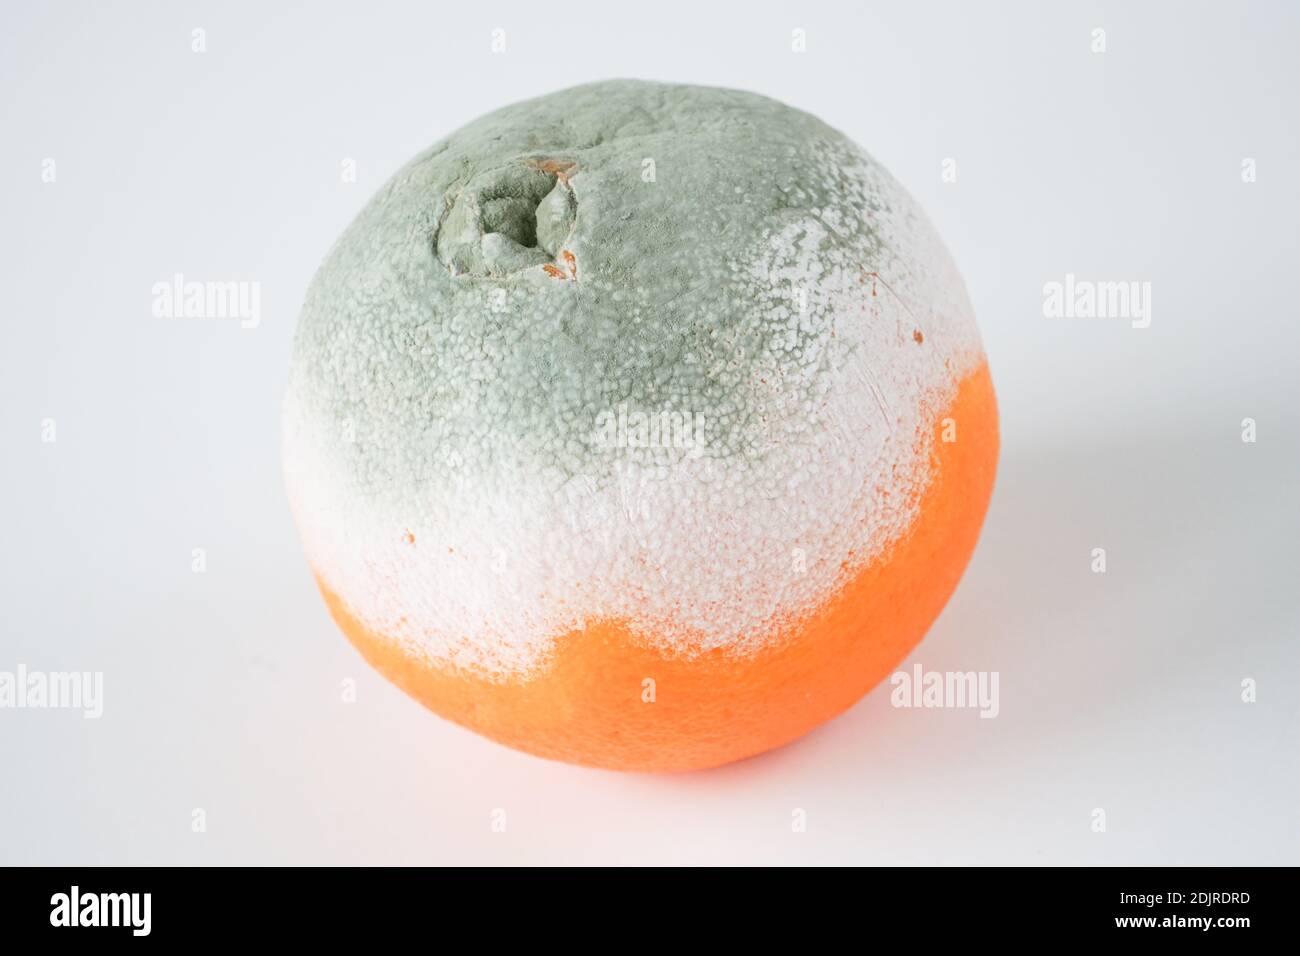 Nahaufnahme von Schimmelpilzen. Formstrukturprobe auf der Oberfläche der Orangenfrucht. Ein verdorbenes Essensbeispiel auf weißem Hintergrund. Stockfoto